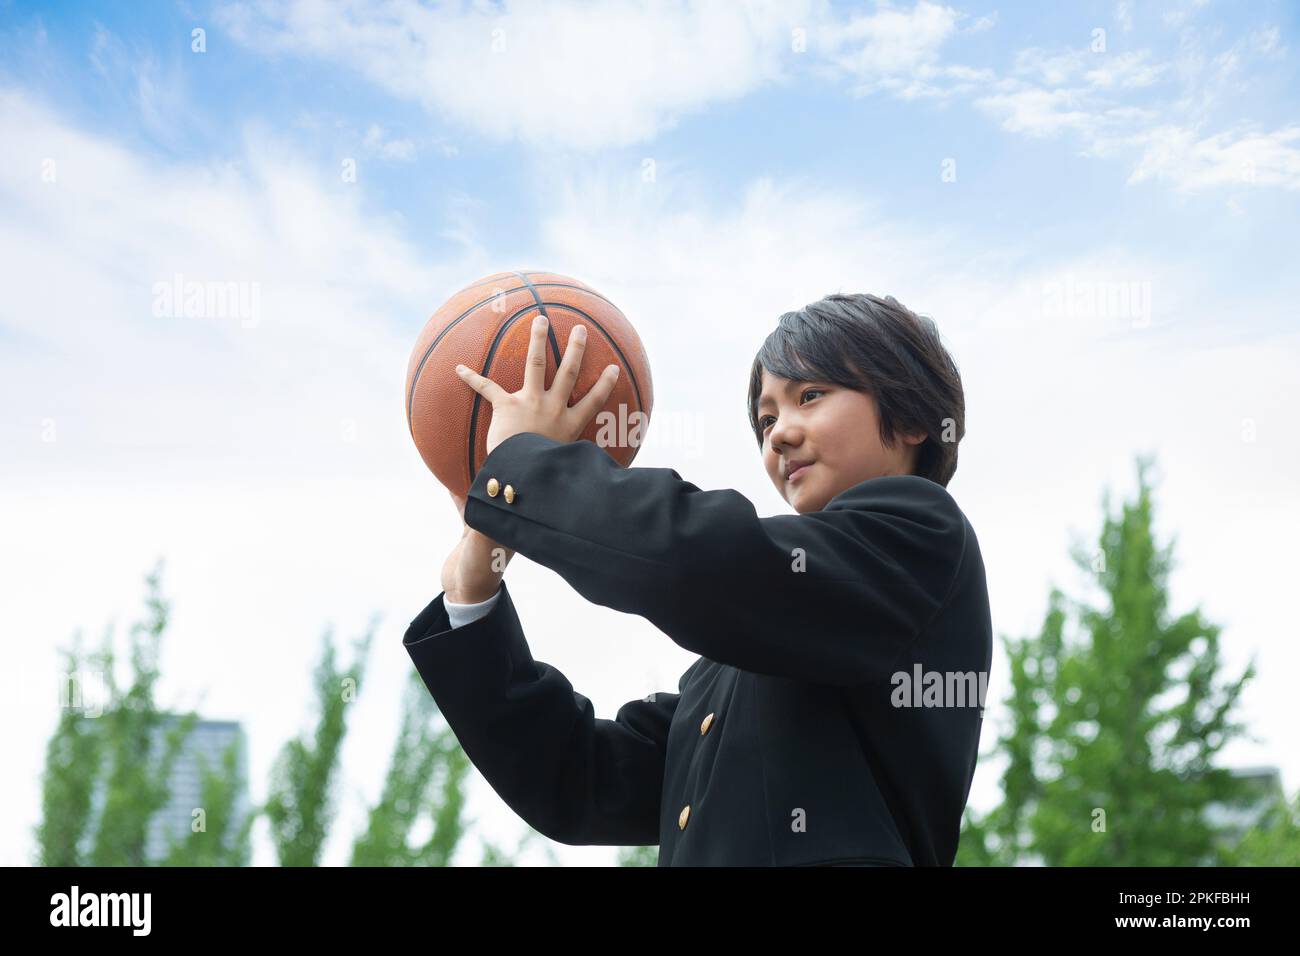 Élève secondaire junior avec un basket-ball Banque D'Images